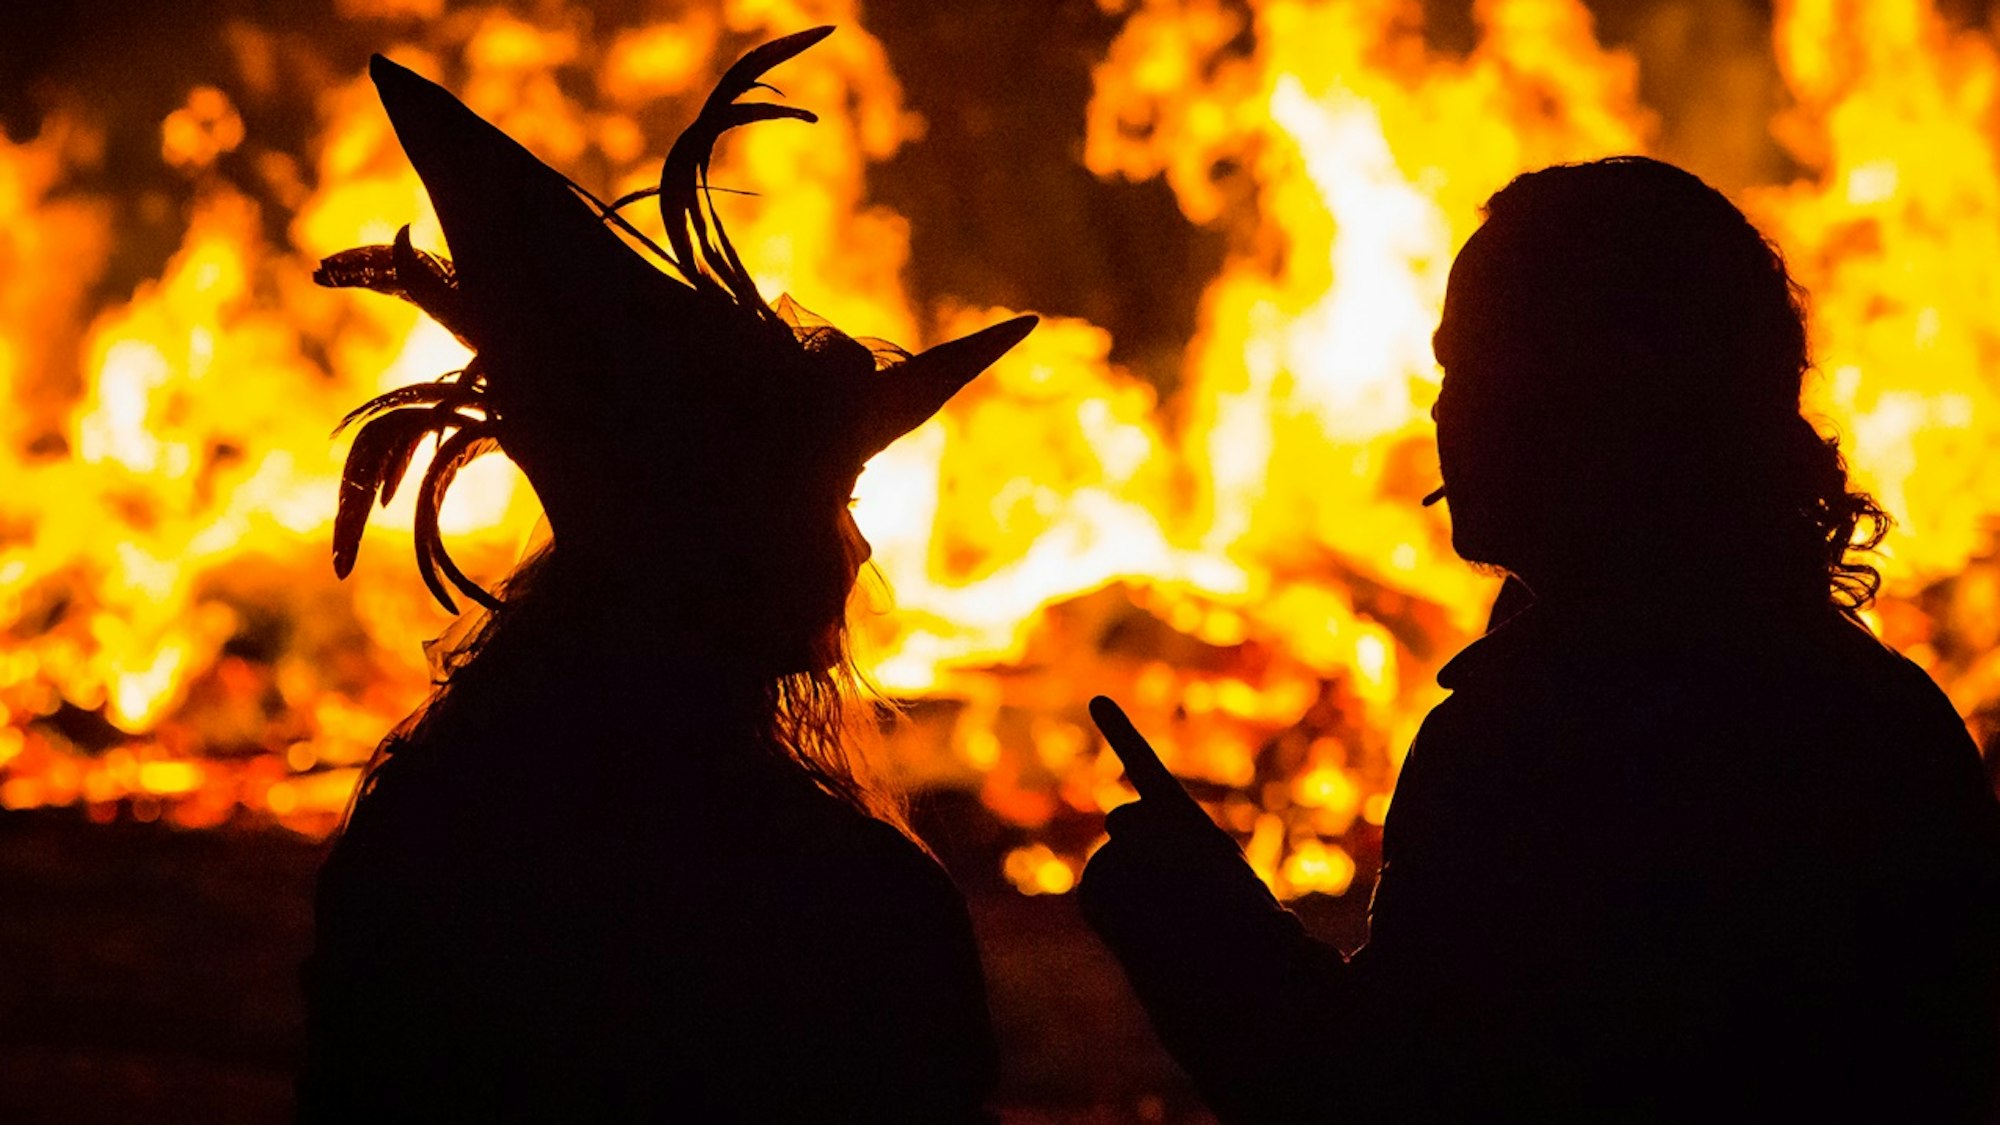 Frau mit Hexenhut und Mann sitzen vor einem Feuer